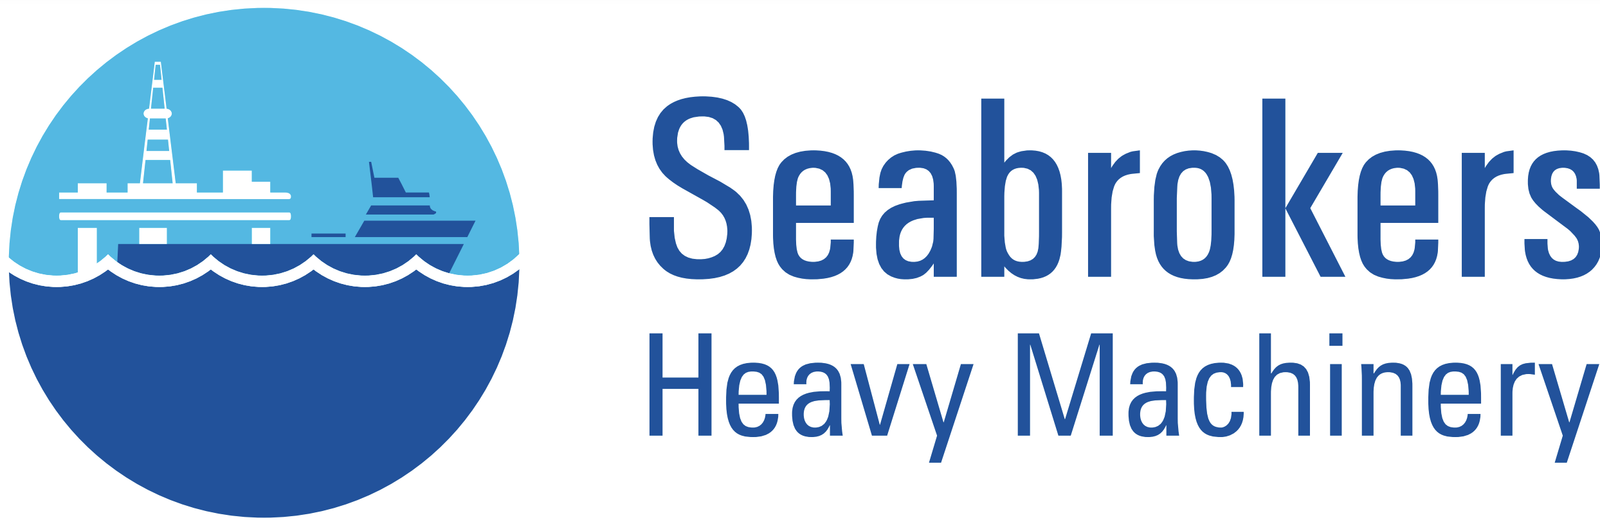 Seabrokers Heavy Machinery